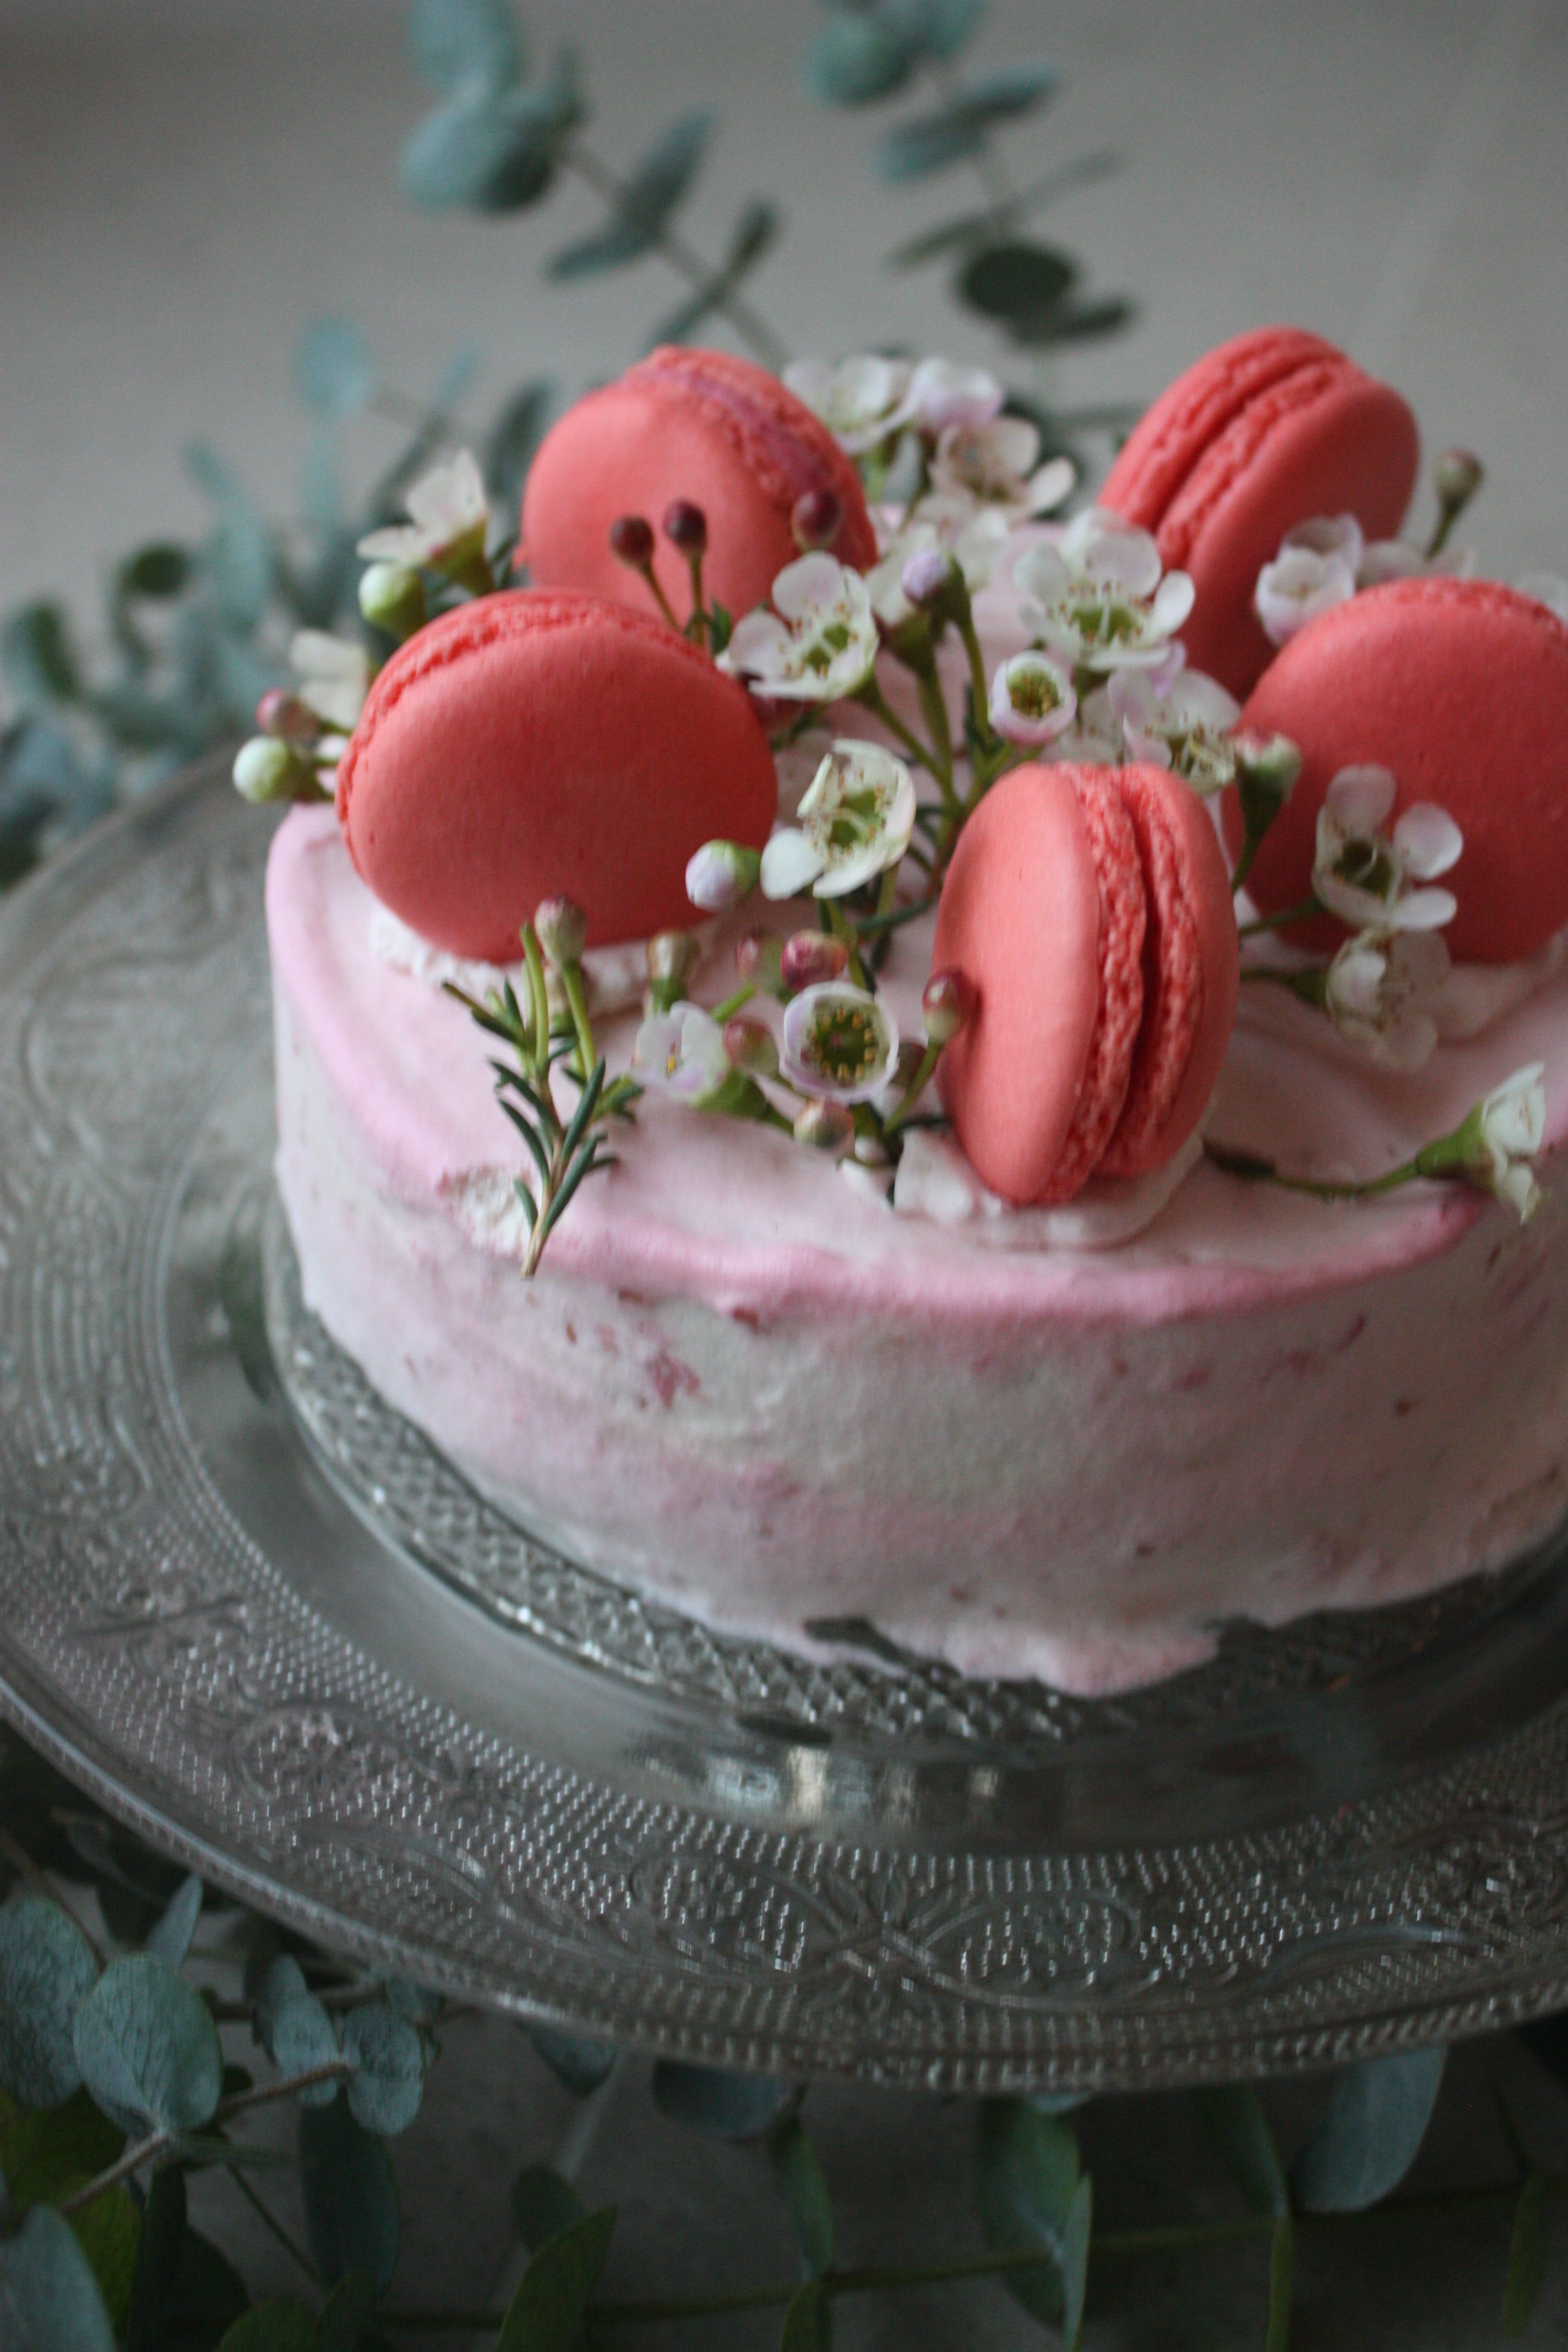 ラズベリーで ピンクのクリスマスケーキ パリ風 ママスタイル Blog Madame Figaro Jp フィガロジャポン